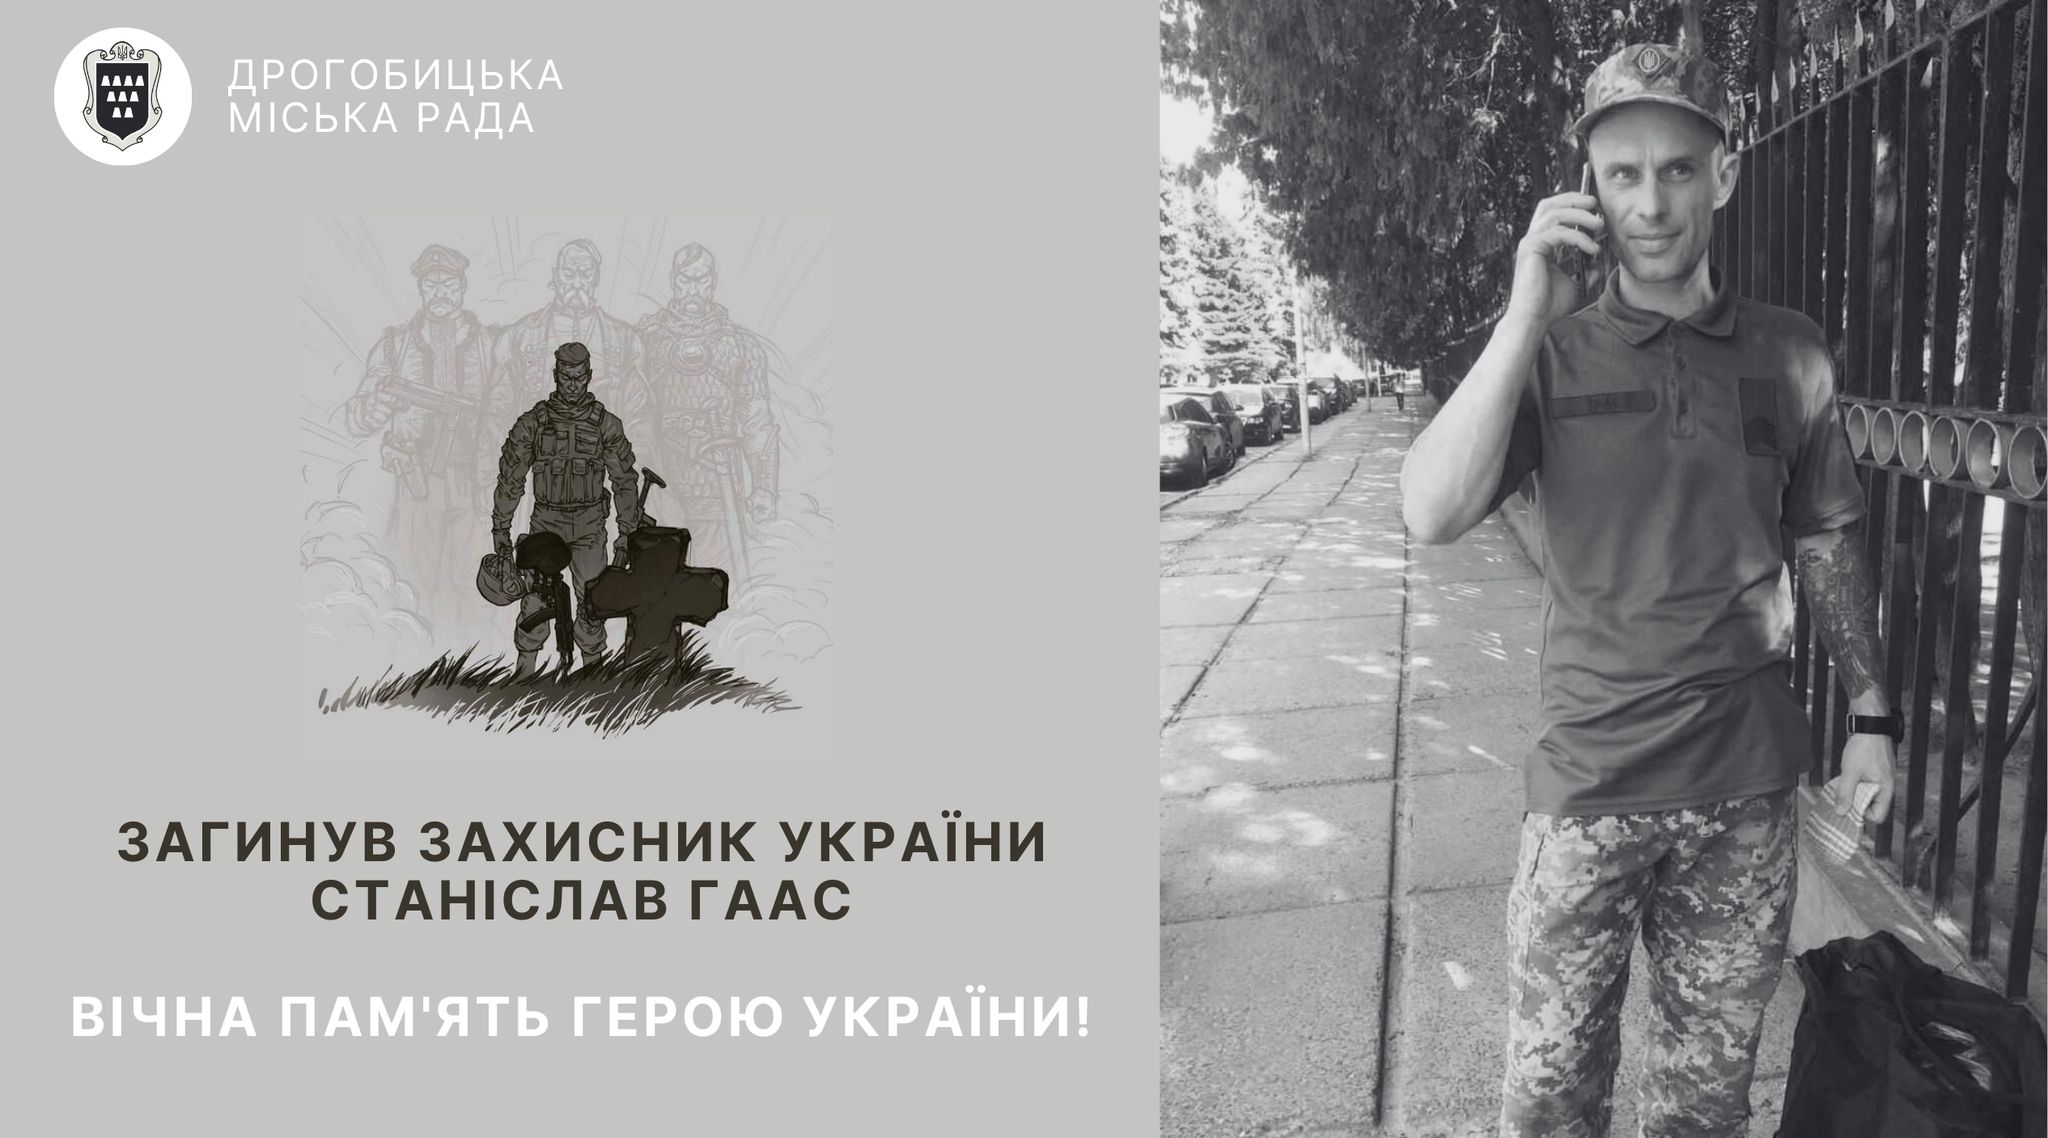 Загинув захисник України Станіслав Гаас: сьогодні відбудеться зустріч Героя